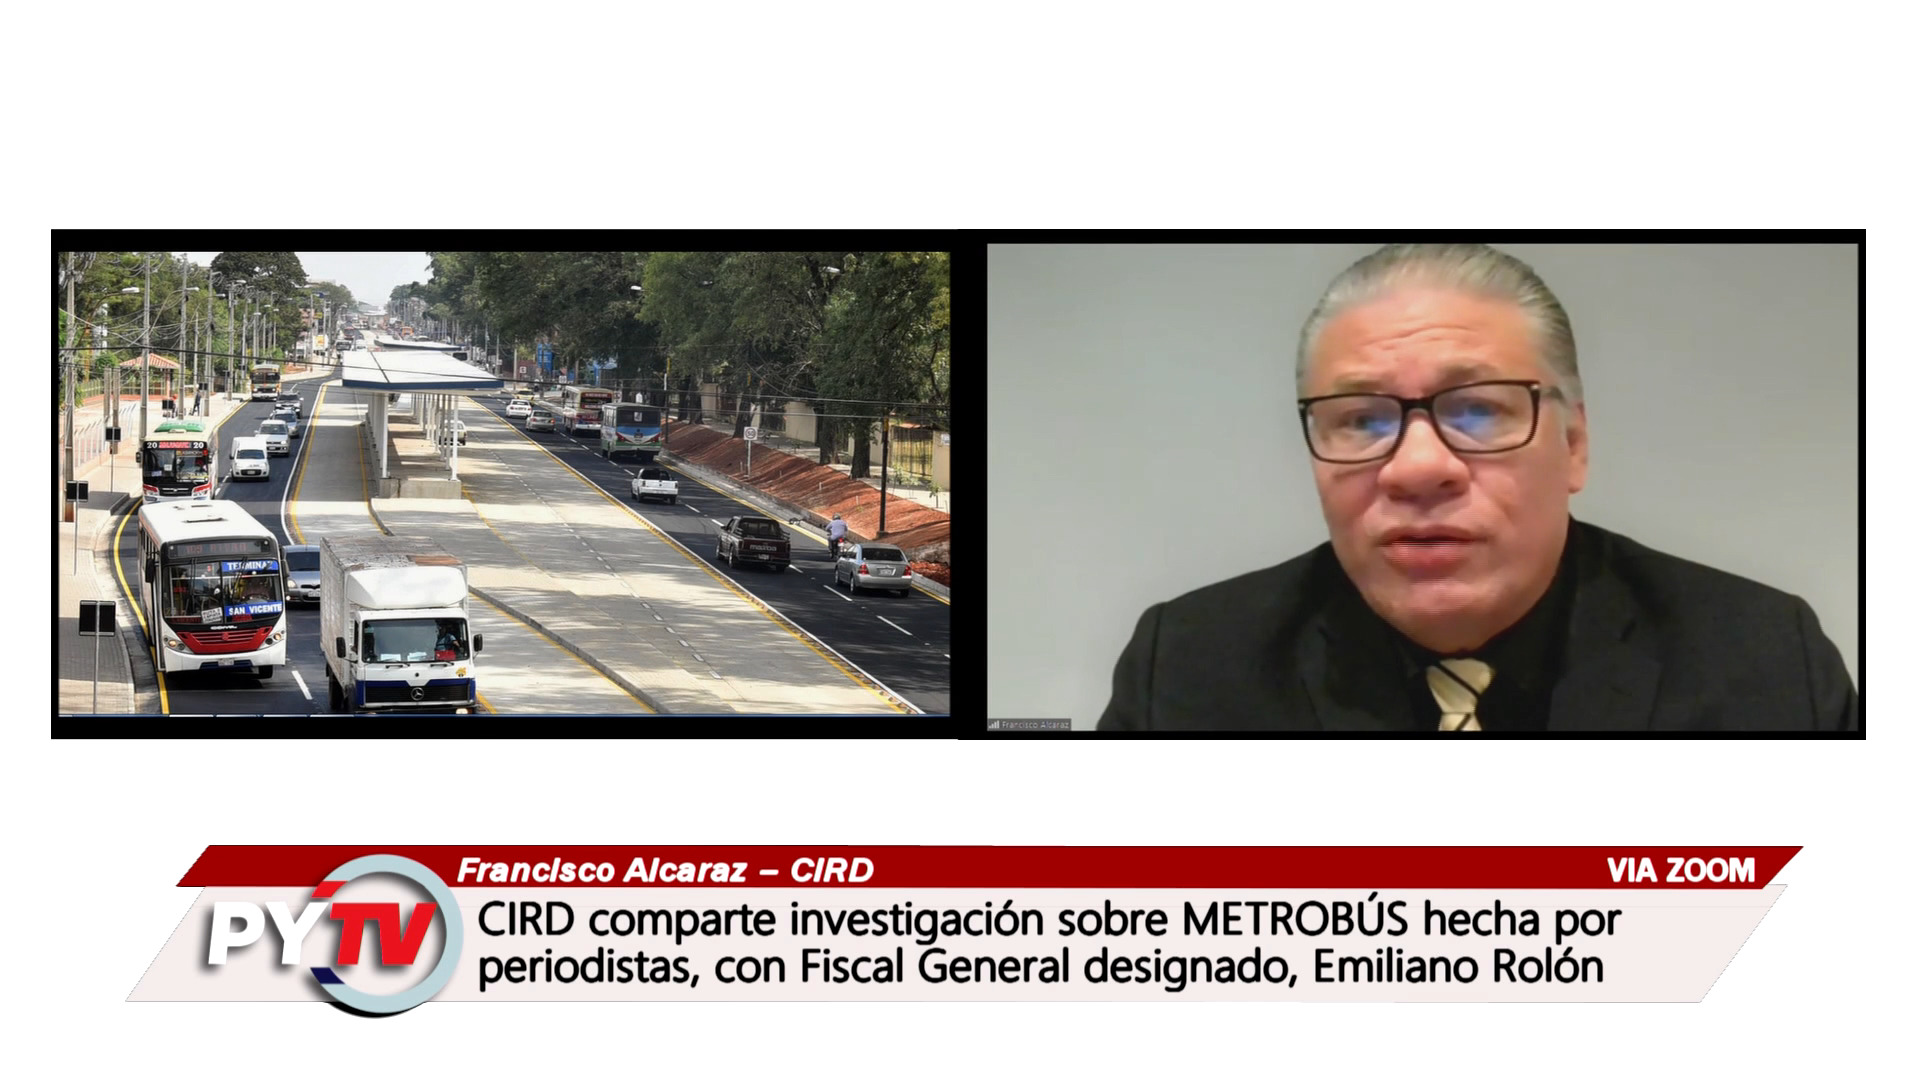 CIRD presenta investigación sobre el METROBUS hecha por periodistas al Fiscal General designado, Emiliano Rolón Fernández.